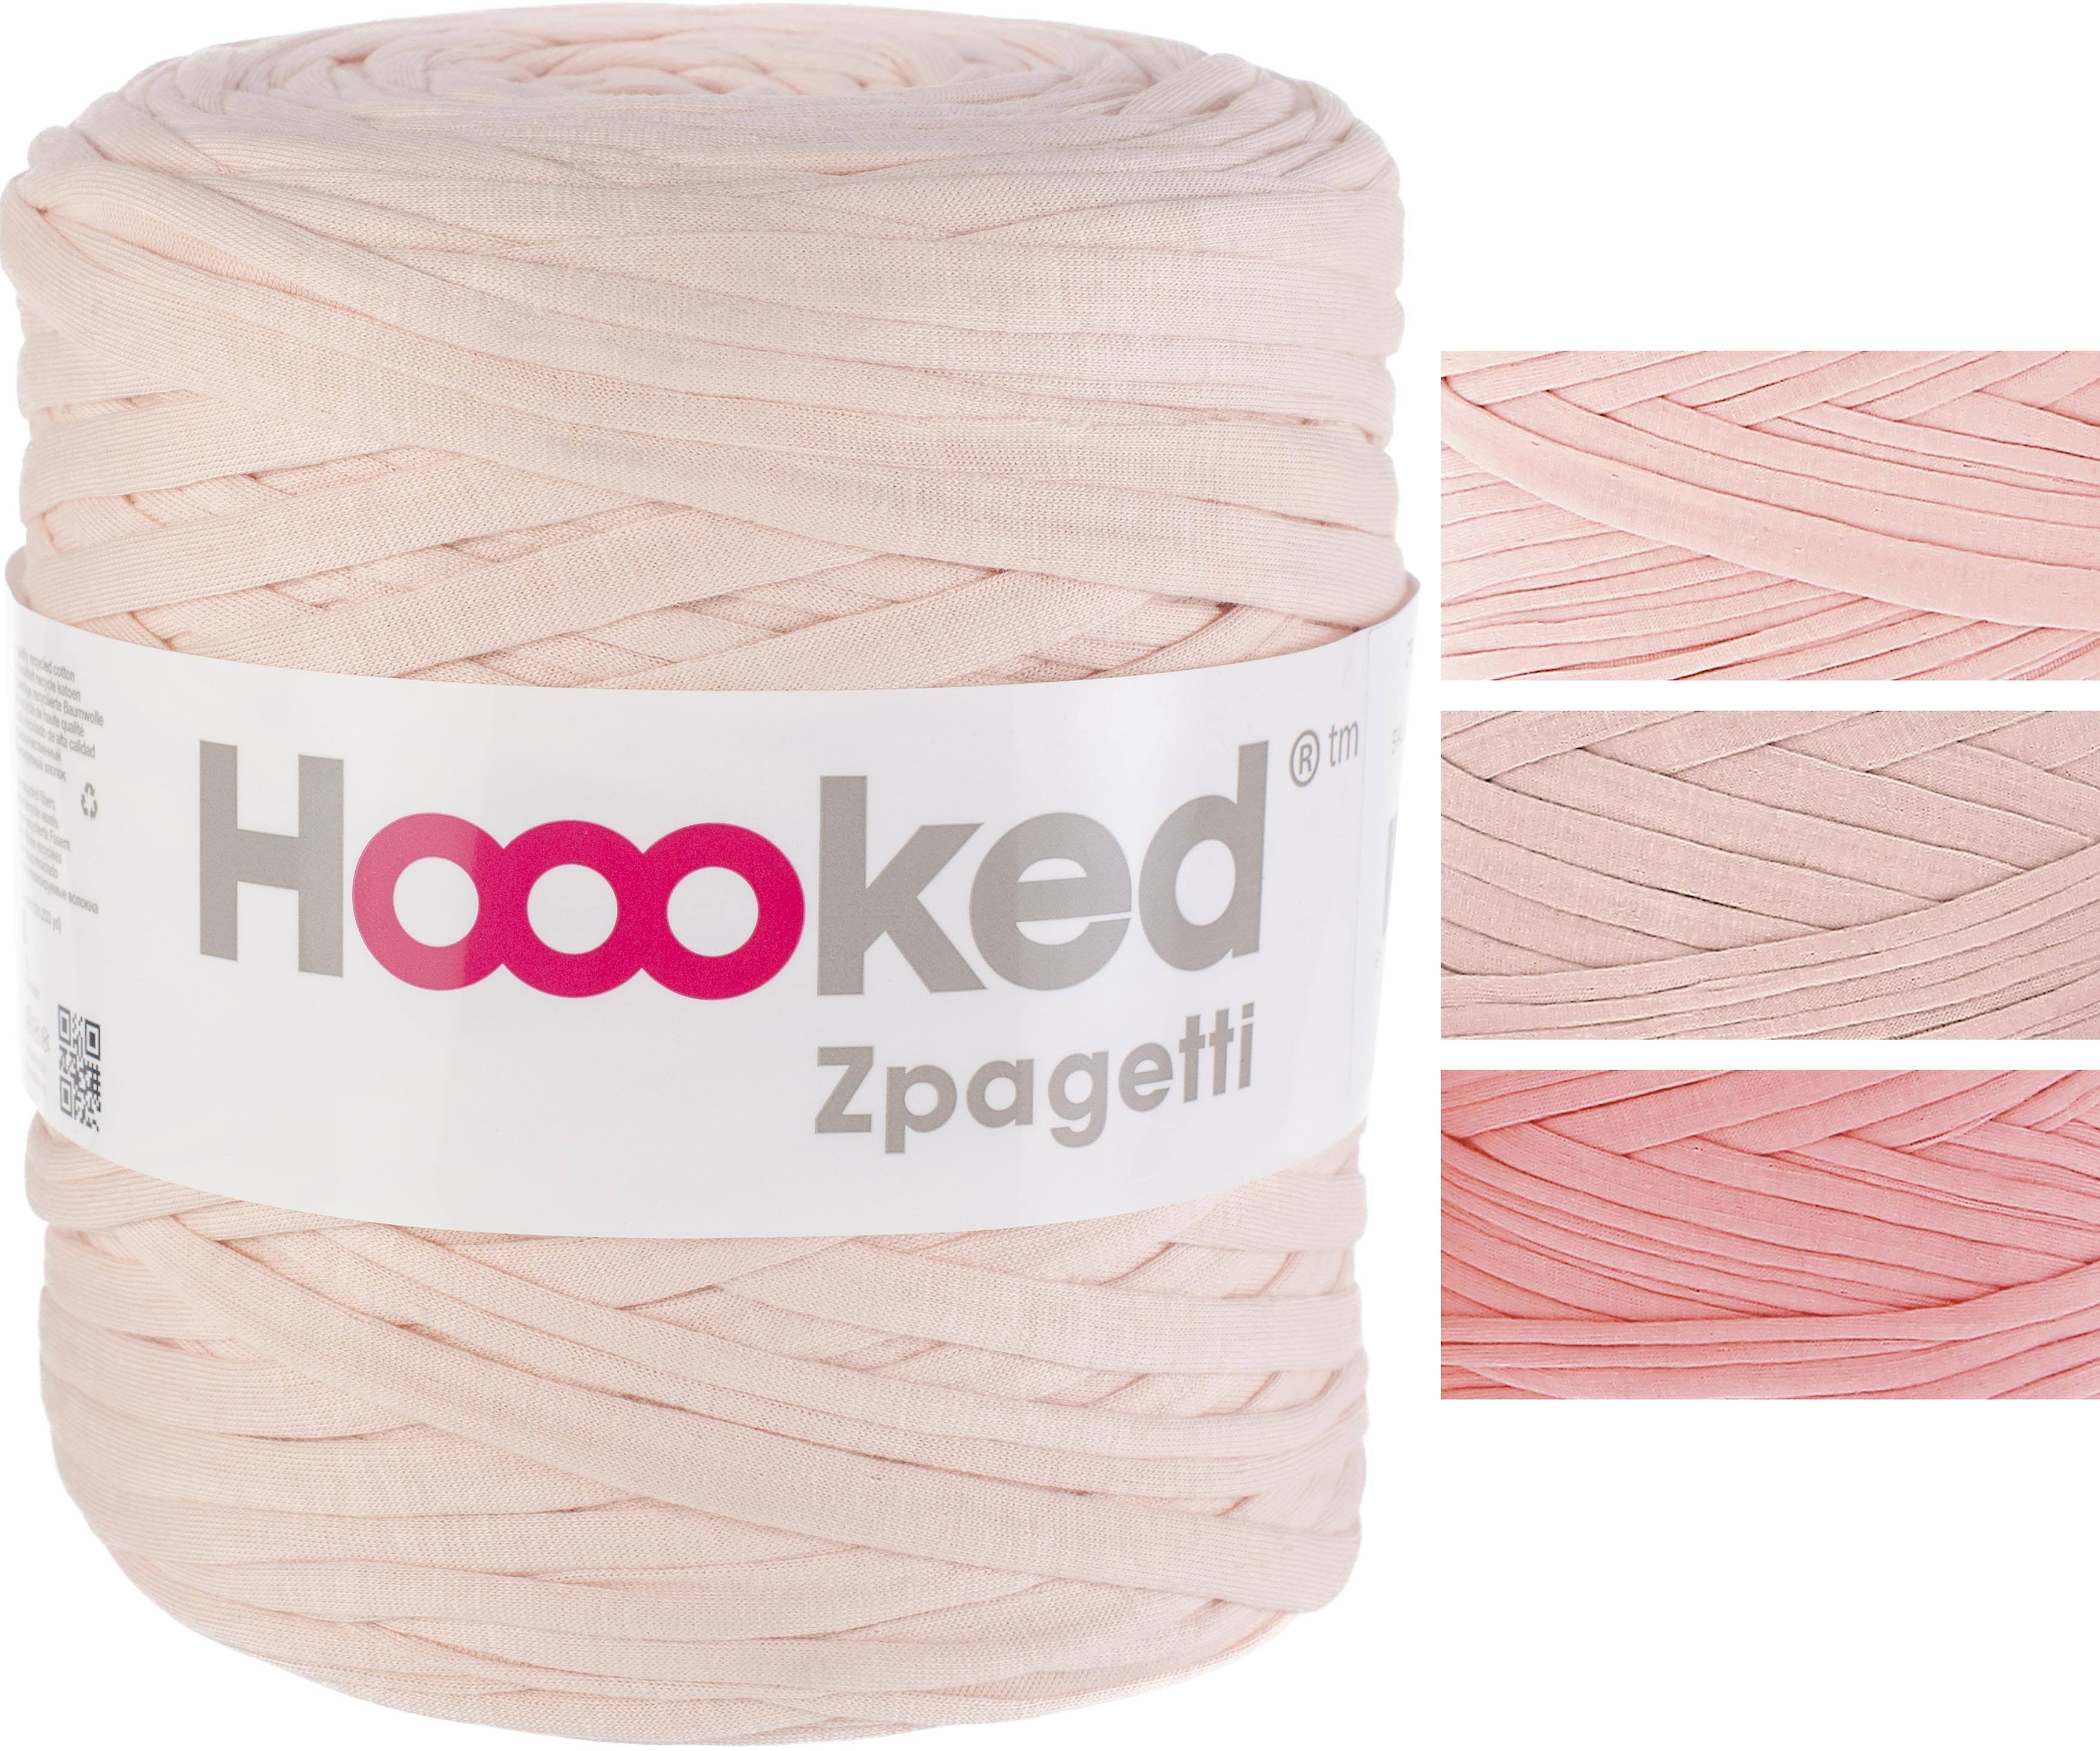 Hoooked Zpagetti Yarn - Ballet Peach*